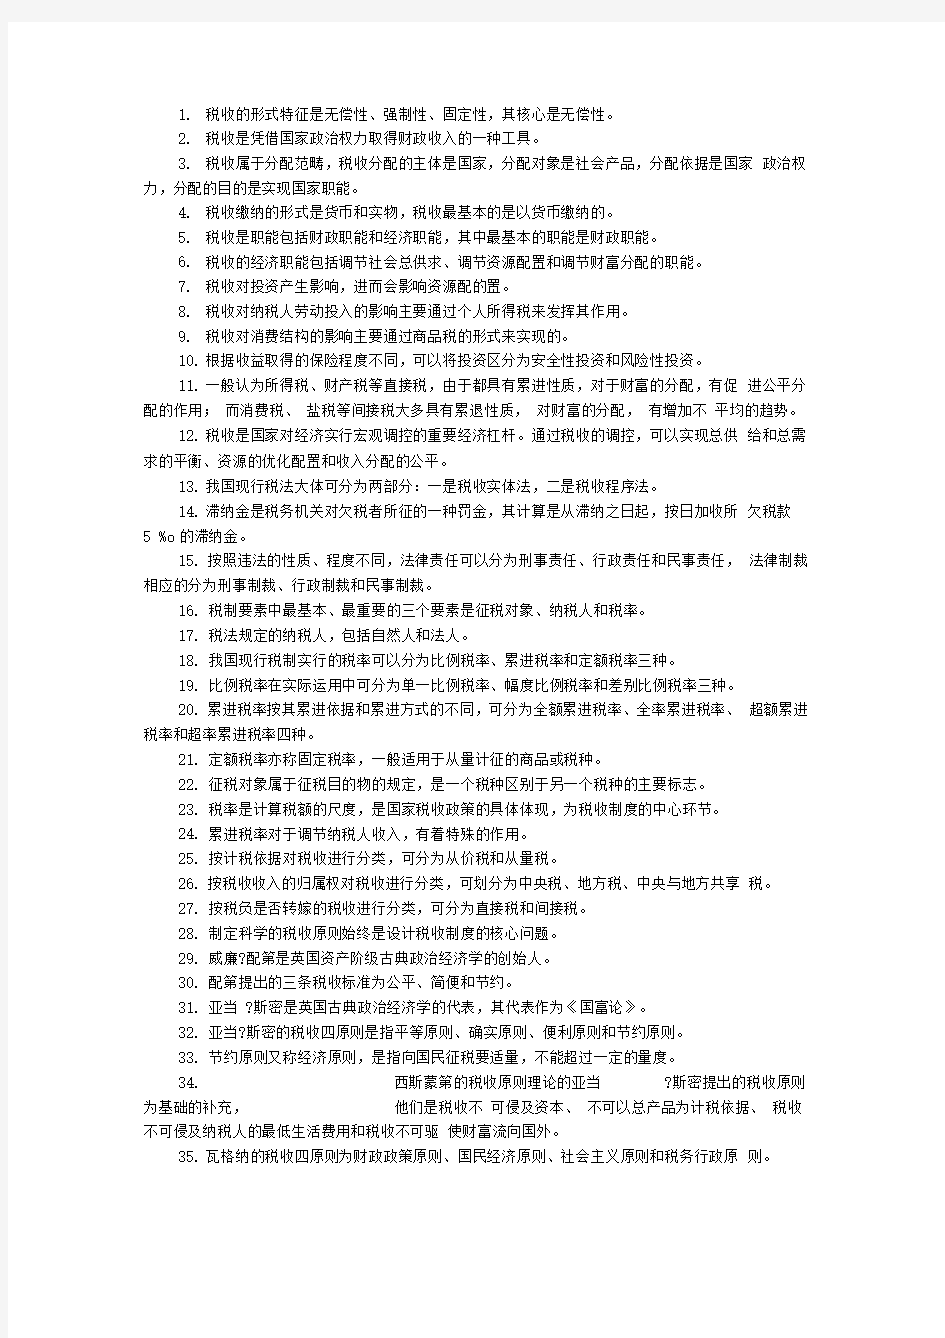 自考《中国税制》课堂笔记整理版